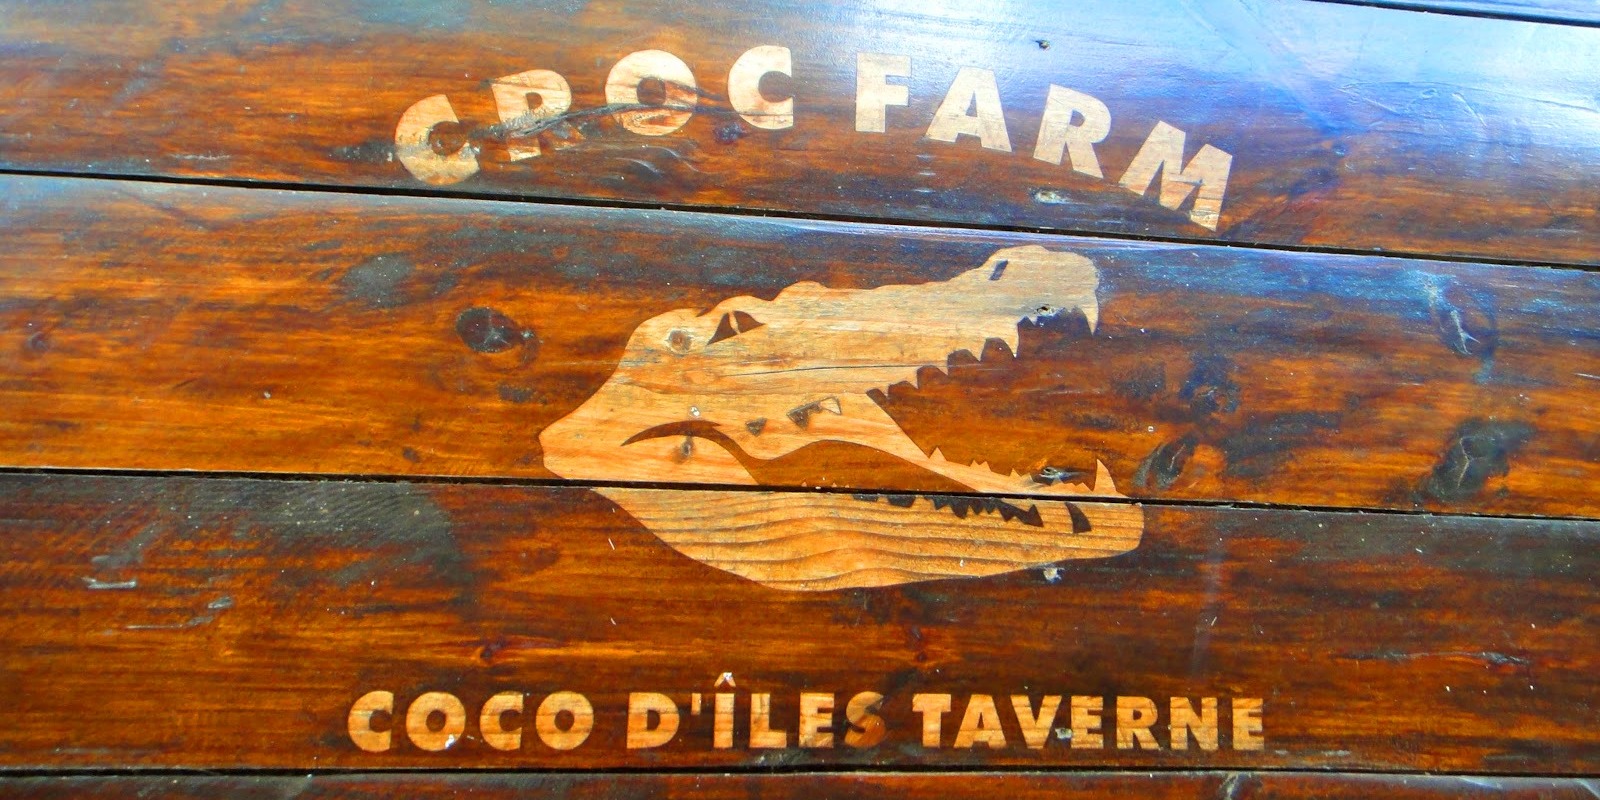 Croc farm ivato 6